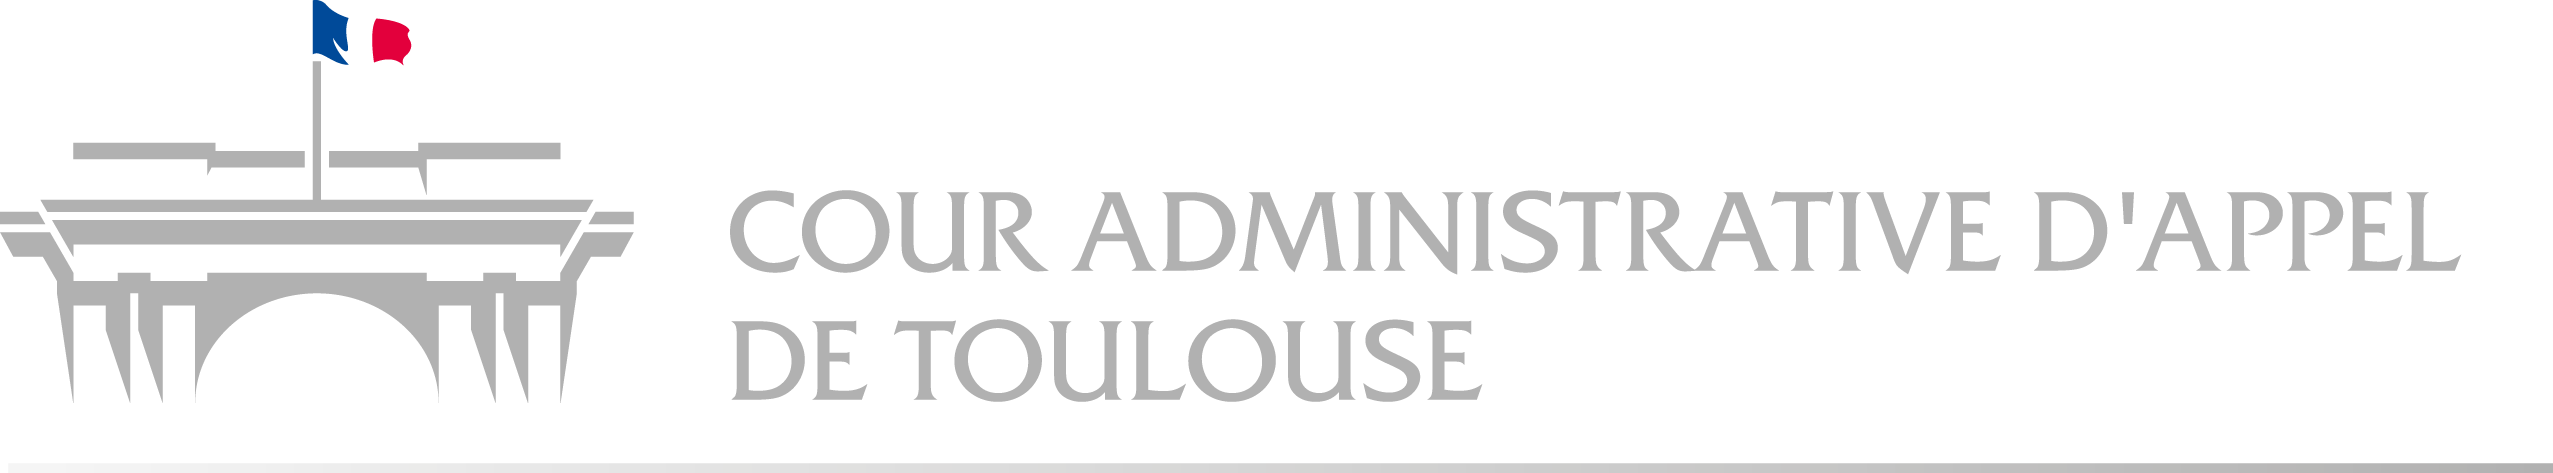 Logo Cour administrative d'appel de Toulouse